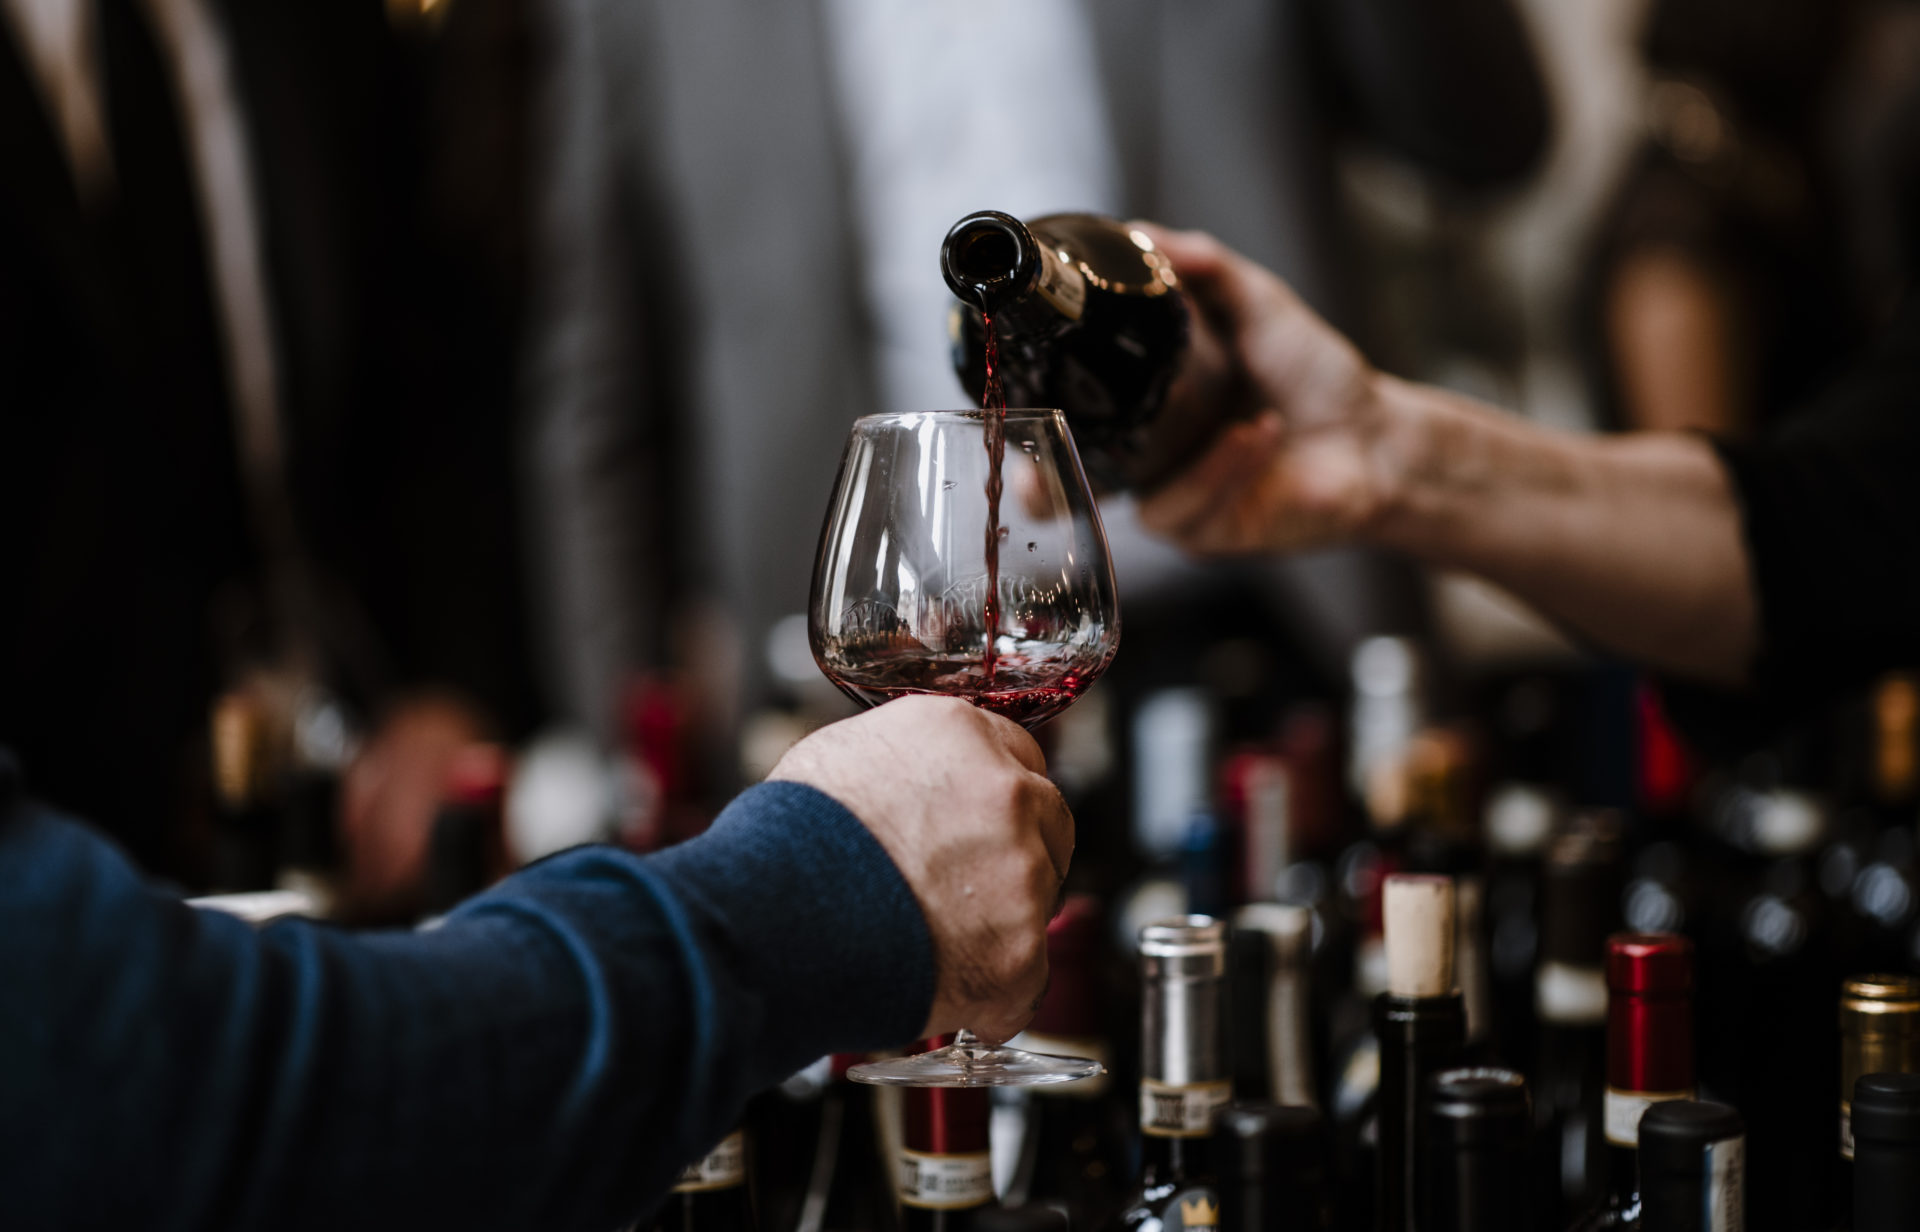 Ritorna il Merano WineFestival, con la sua 32a edizione, e Vinibuoni d’Italia rinnova l’appuntamento con l’evento